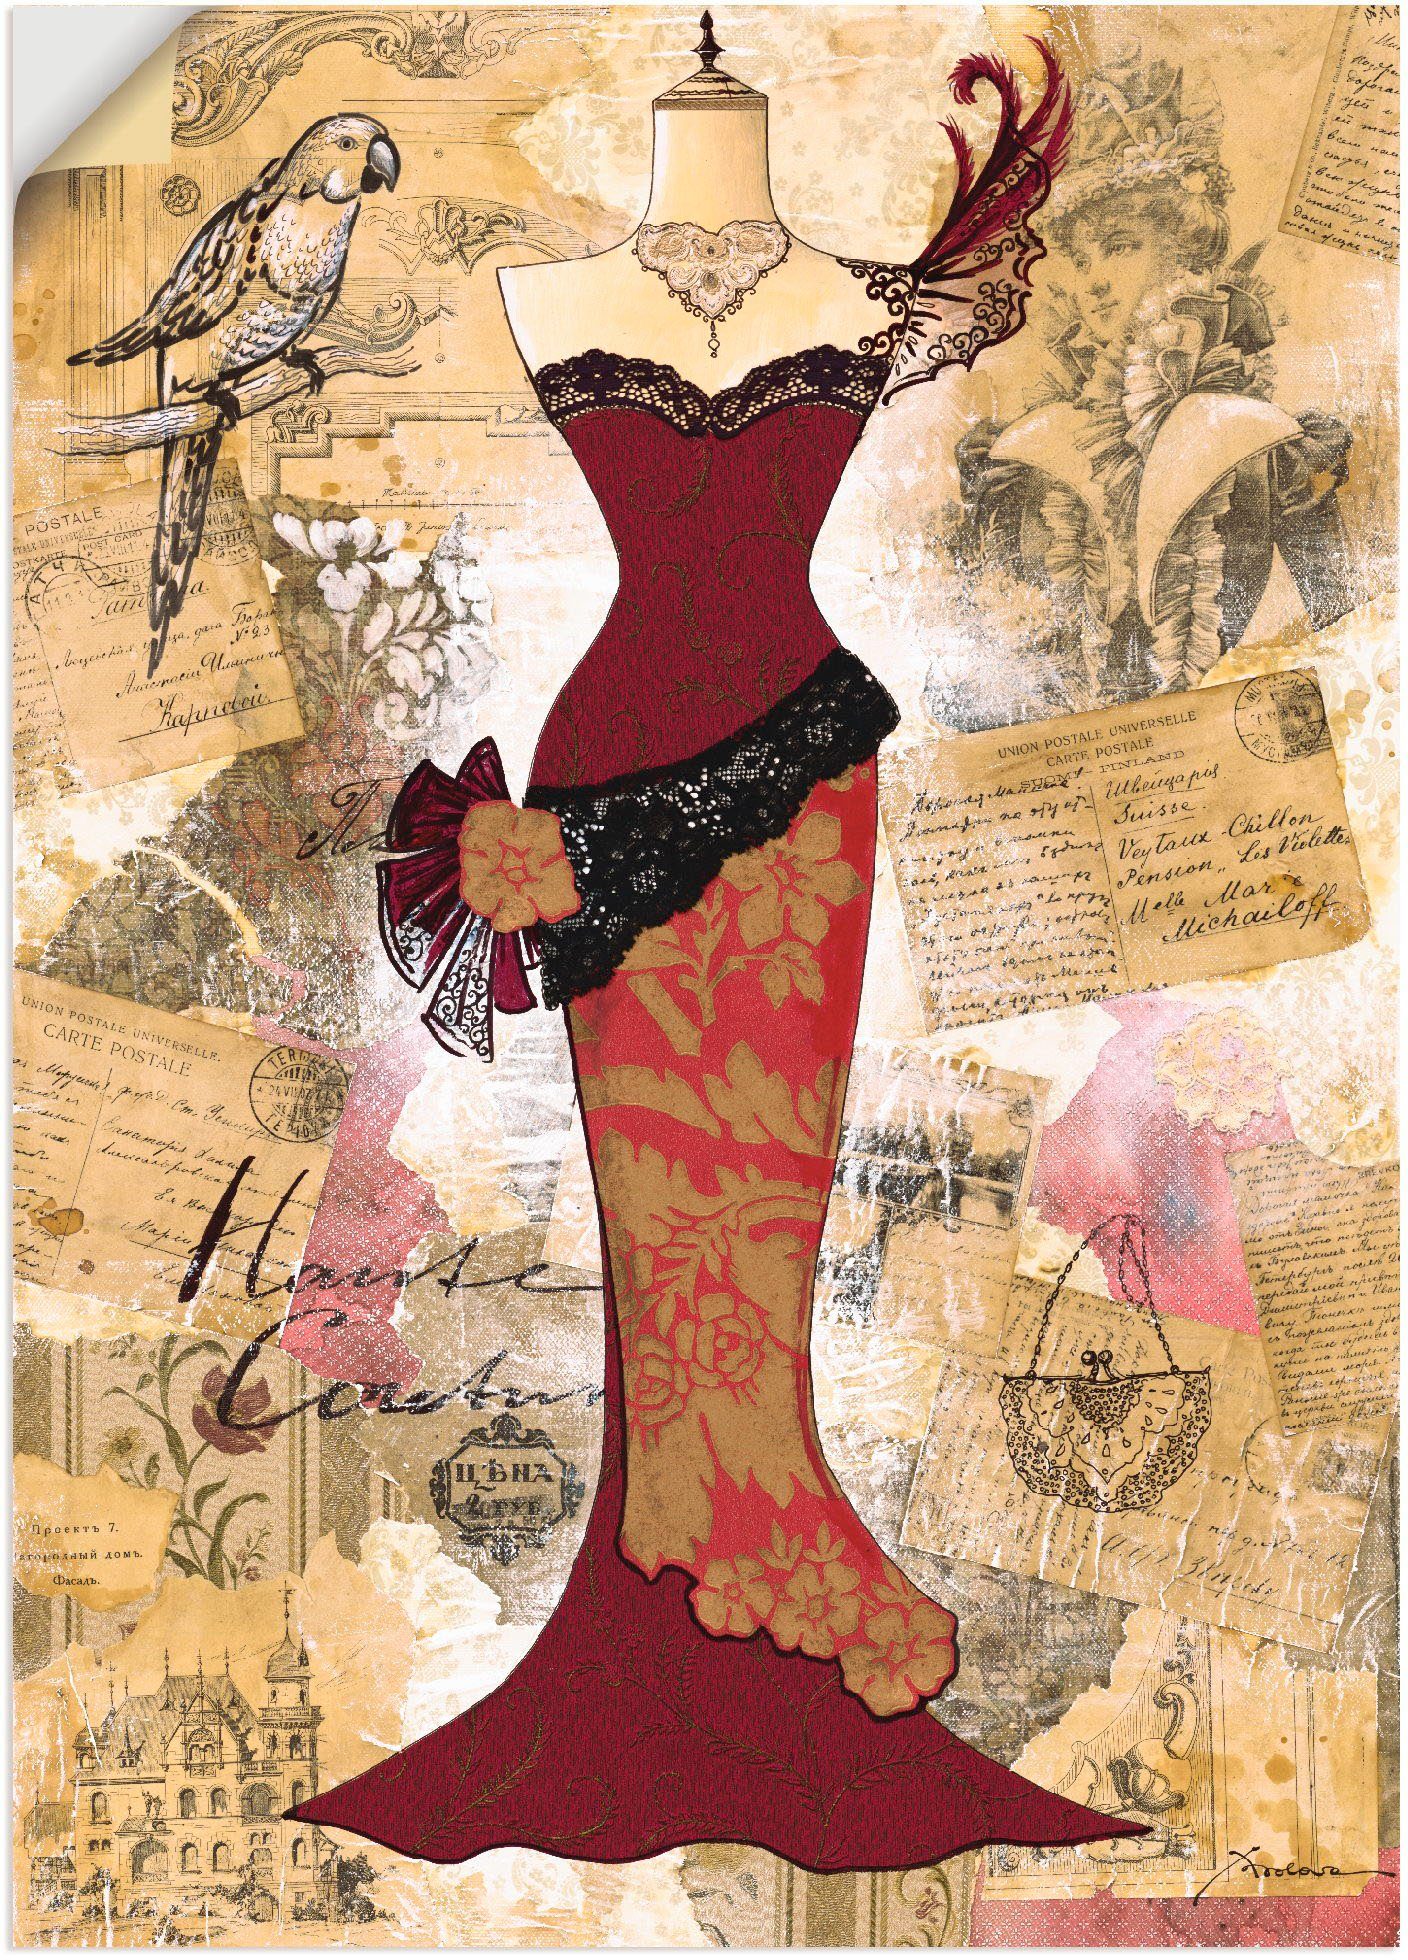 Artland Artprint Antieke jurk - collage in vele afmetingen & productsoorten - artprint van aluminium / artprint voor buiten, artprint op linnen, poster, muursticker / wandfolie ook